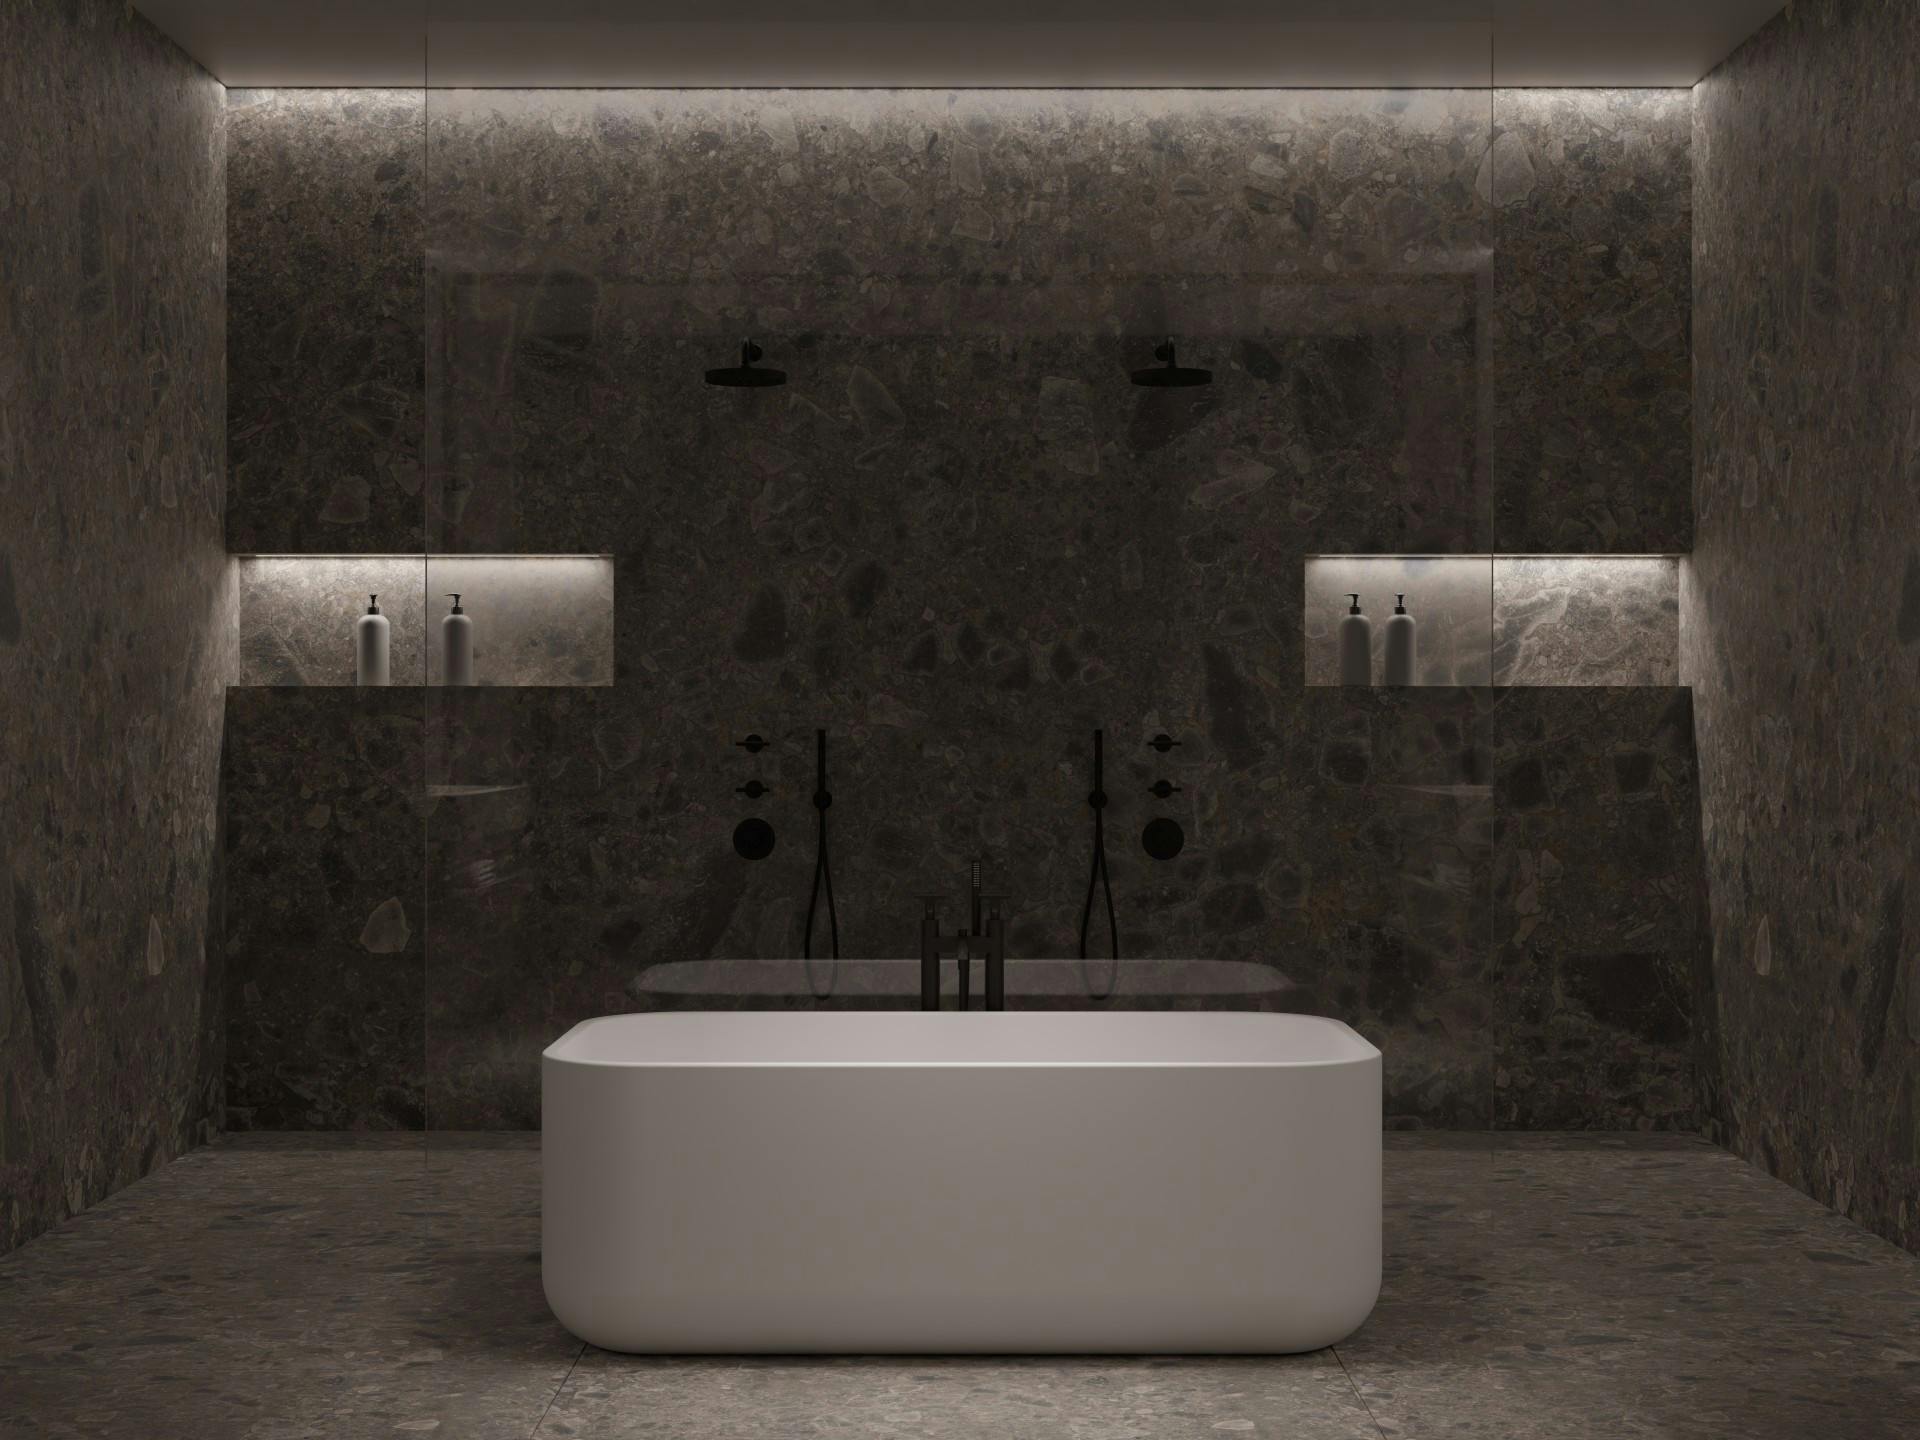 Numero immagine 35 della sezione corrente di Travertino: the bathroom by Daniel Germani that brings the water rituals up to date di Cosentino Italia